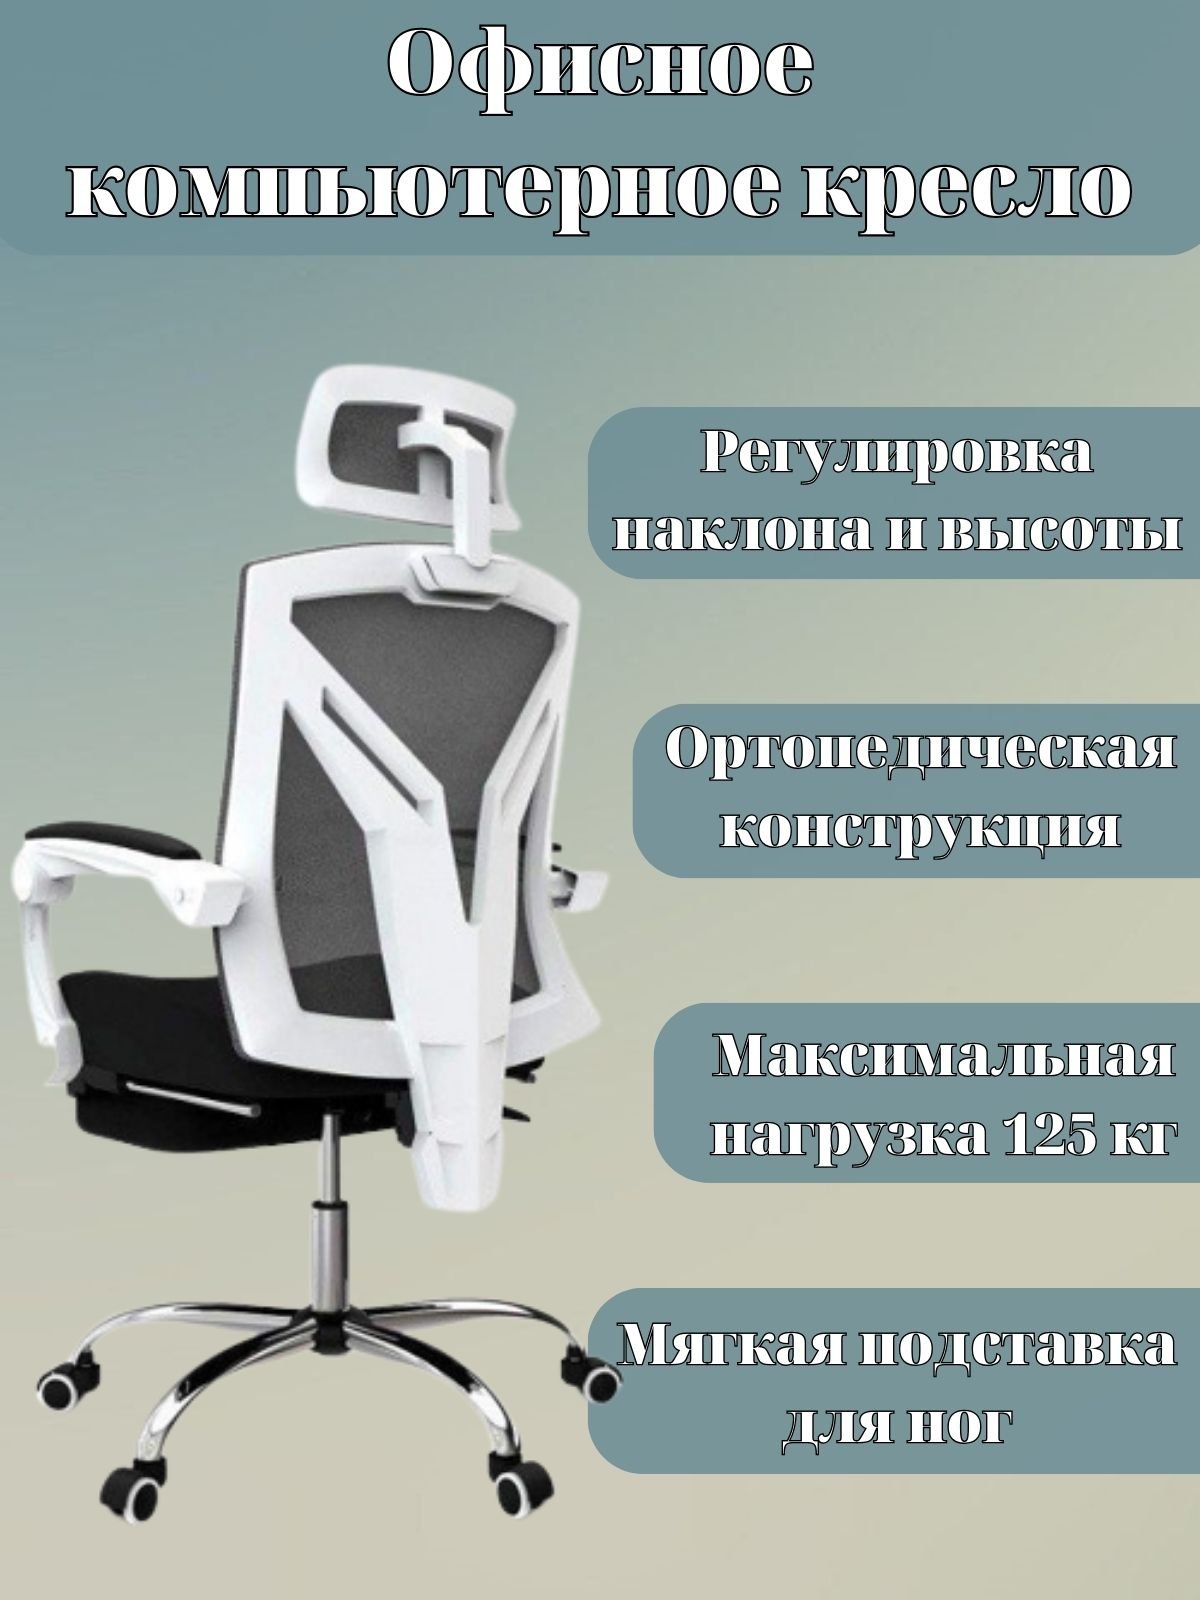 Компьютерное кресло hbada 117wmj